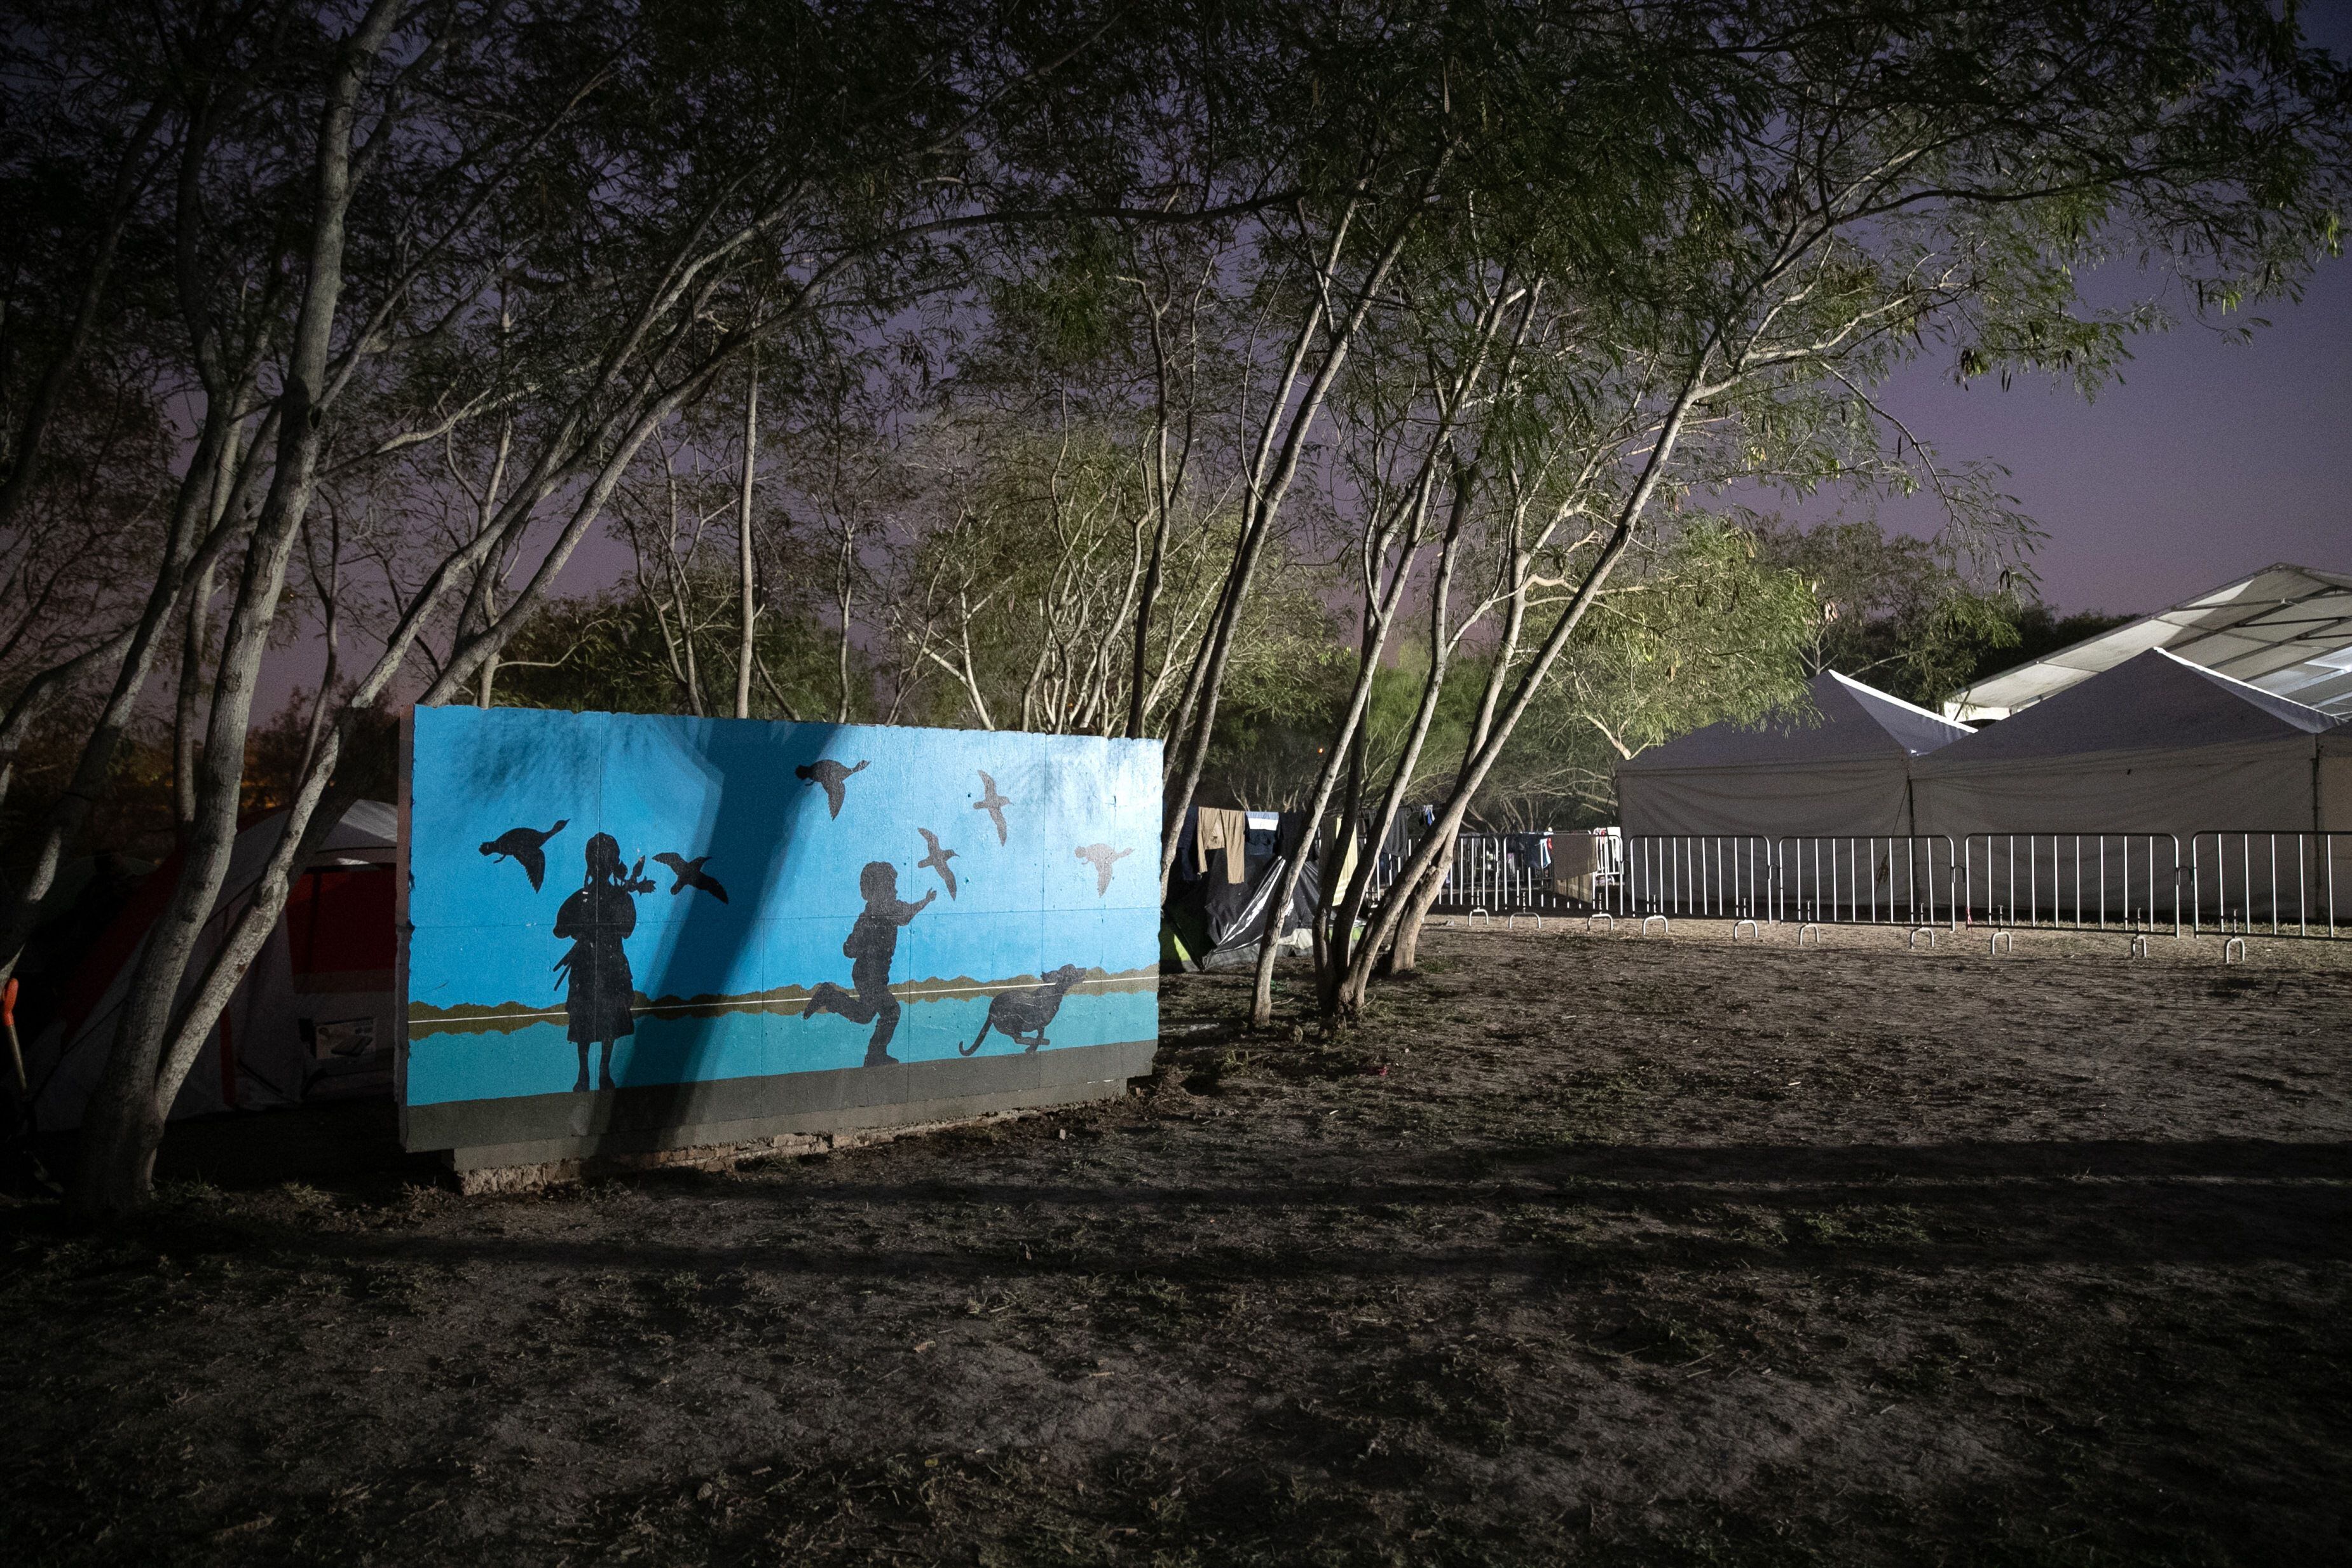 08/12/2019 Un mural cerca de un campamento de migrantes en el estado de Tamaulipas, en México.
SOCIEDAD 
JOHN MOORE
